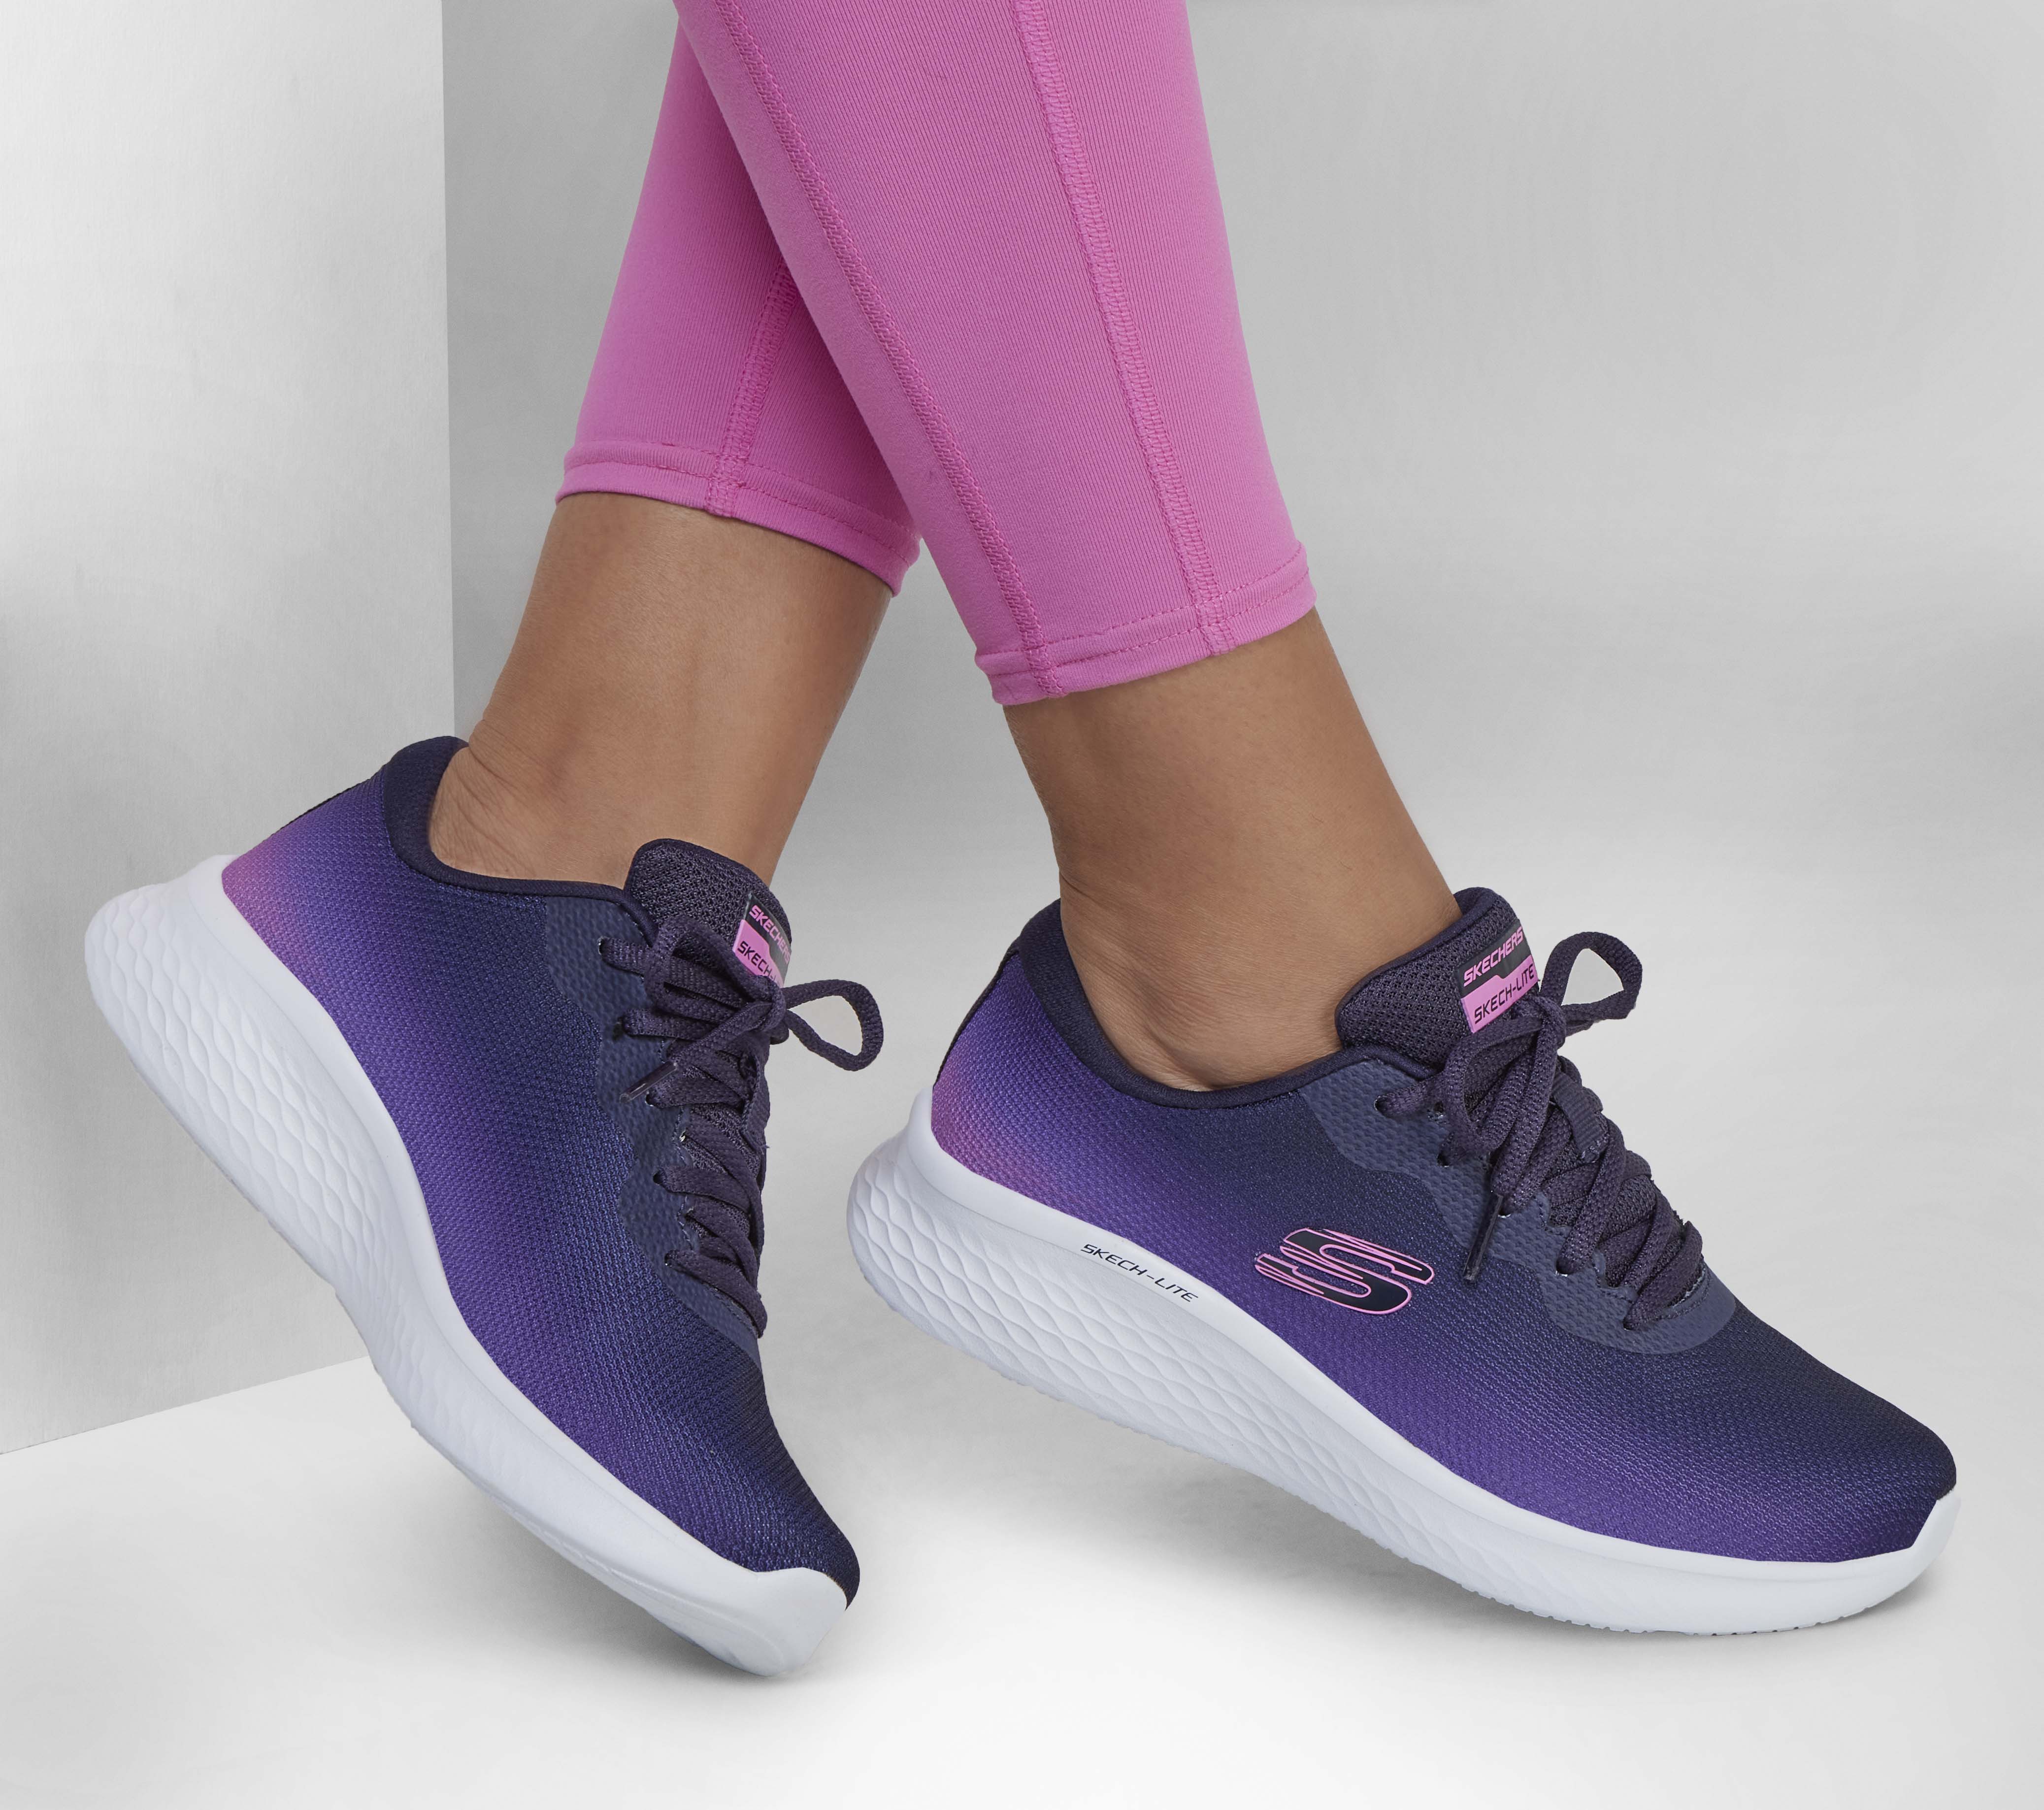 Skechers Sport Women's Skech-lite Pro Sneaker, Black White, 5 Wide :  : Clothing, Shoes & Accessories